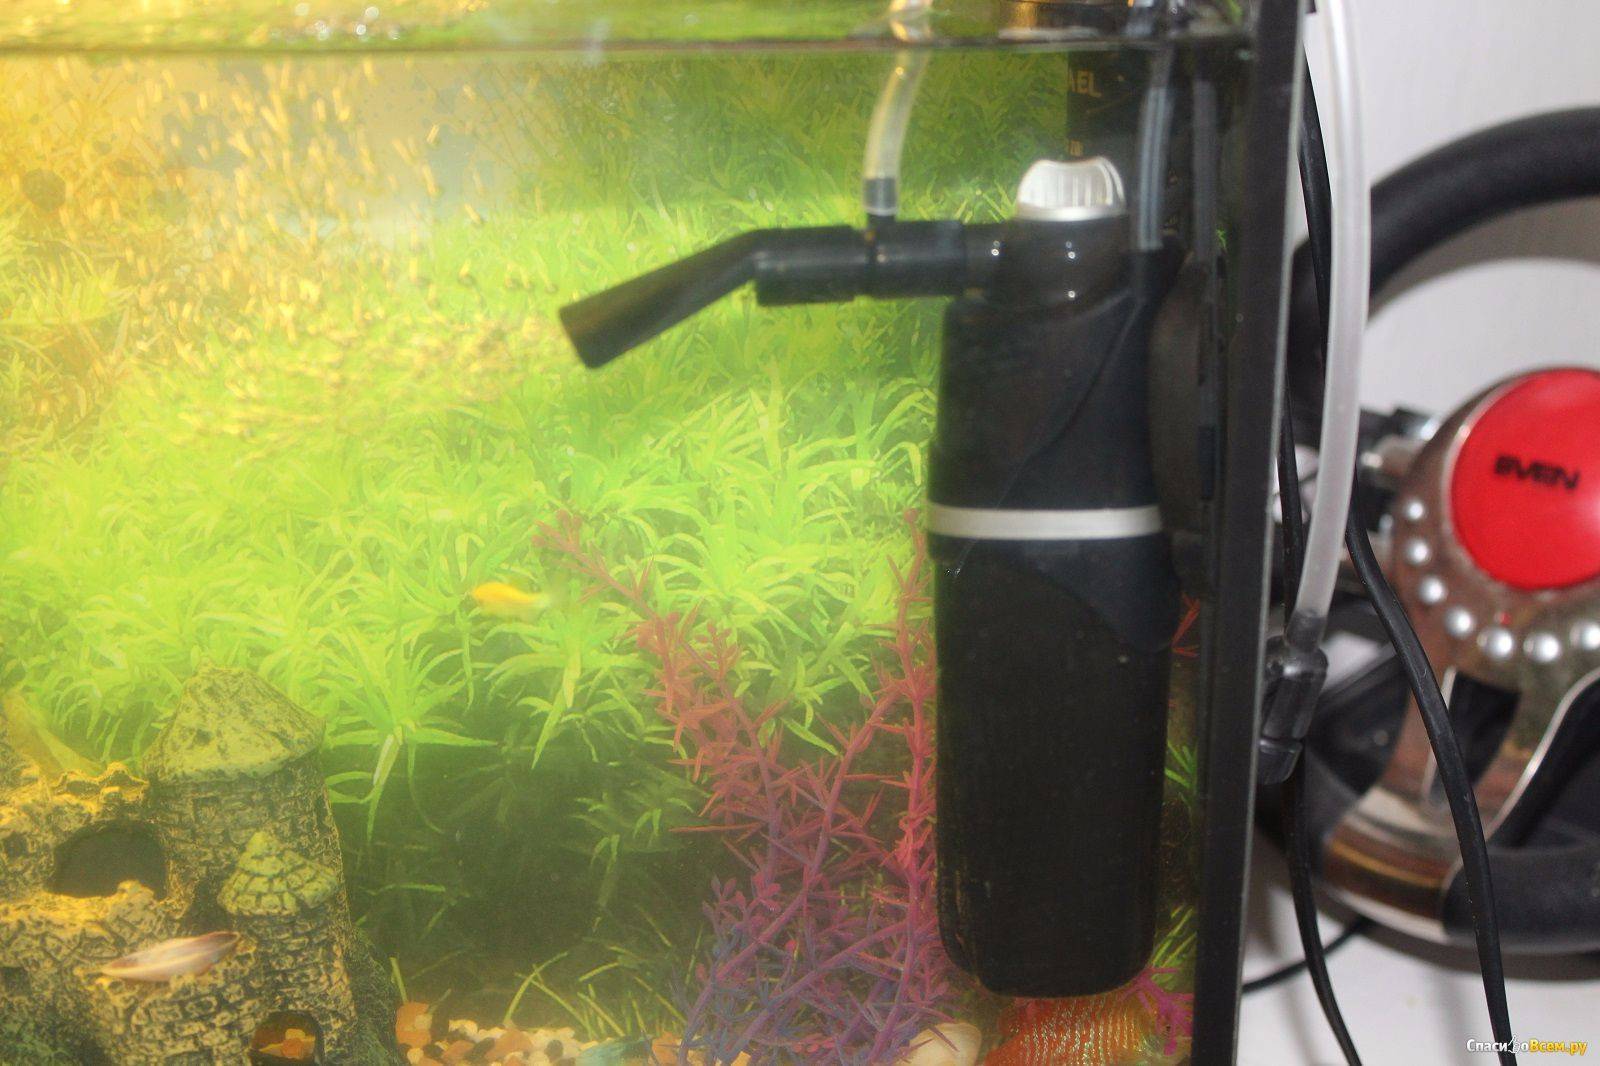 Уход за фильтром для аквариума. как правильно почистить устройство?